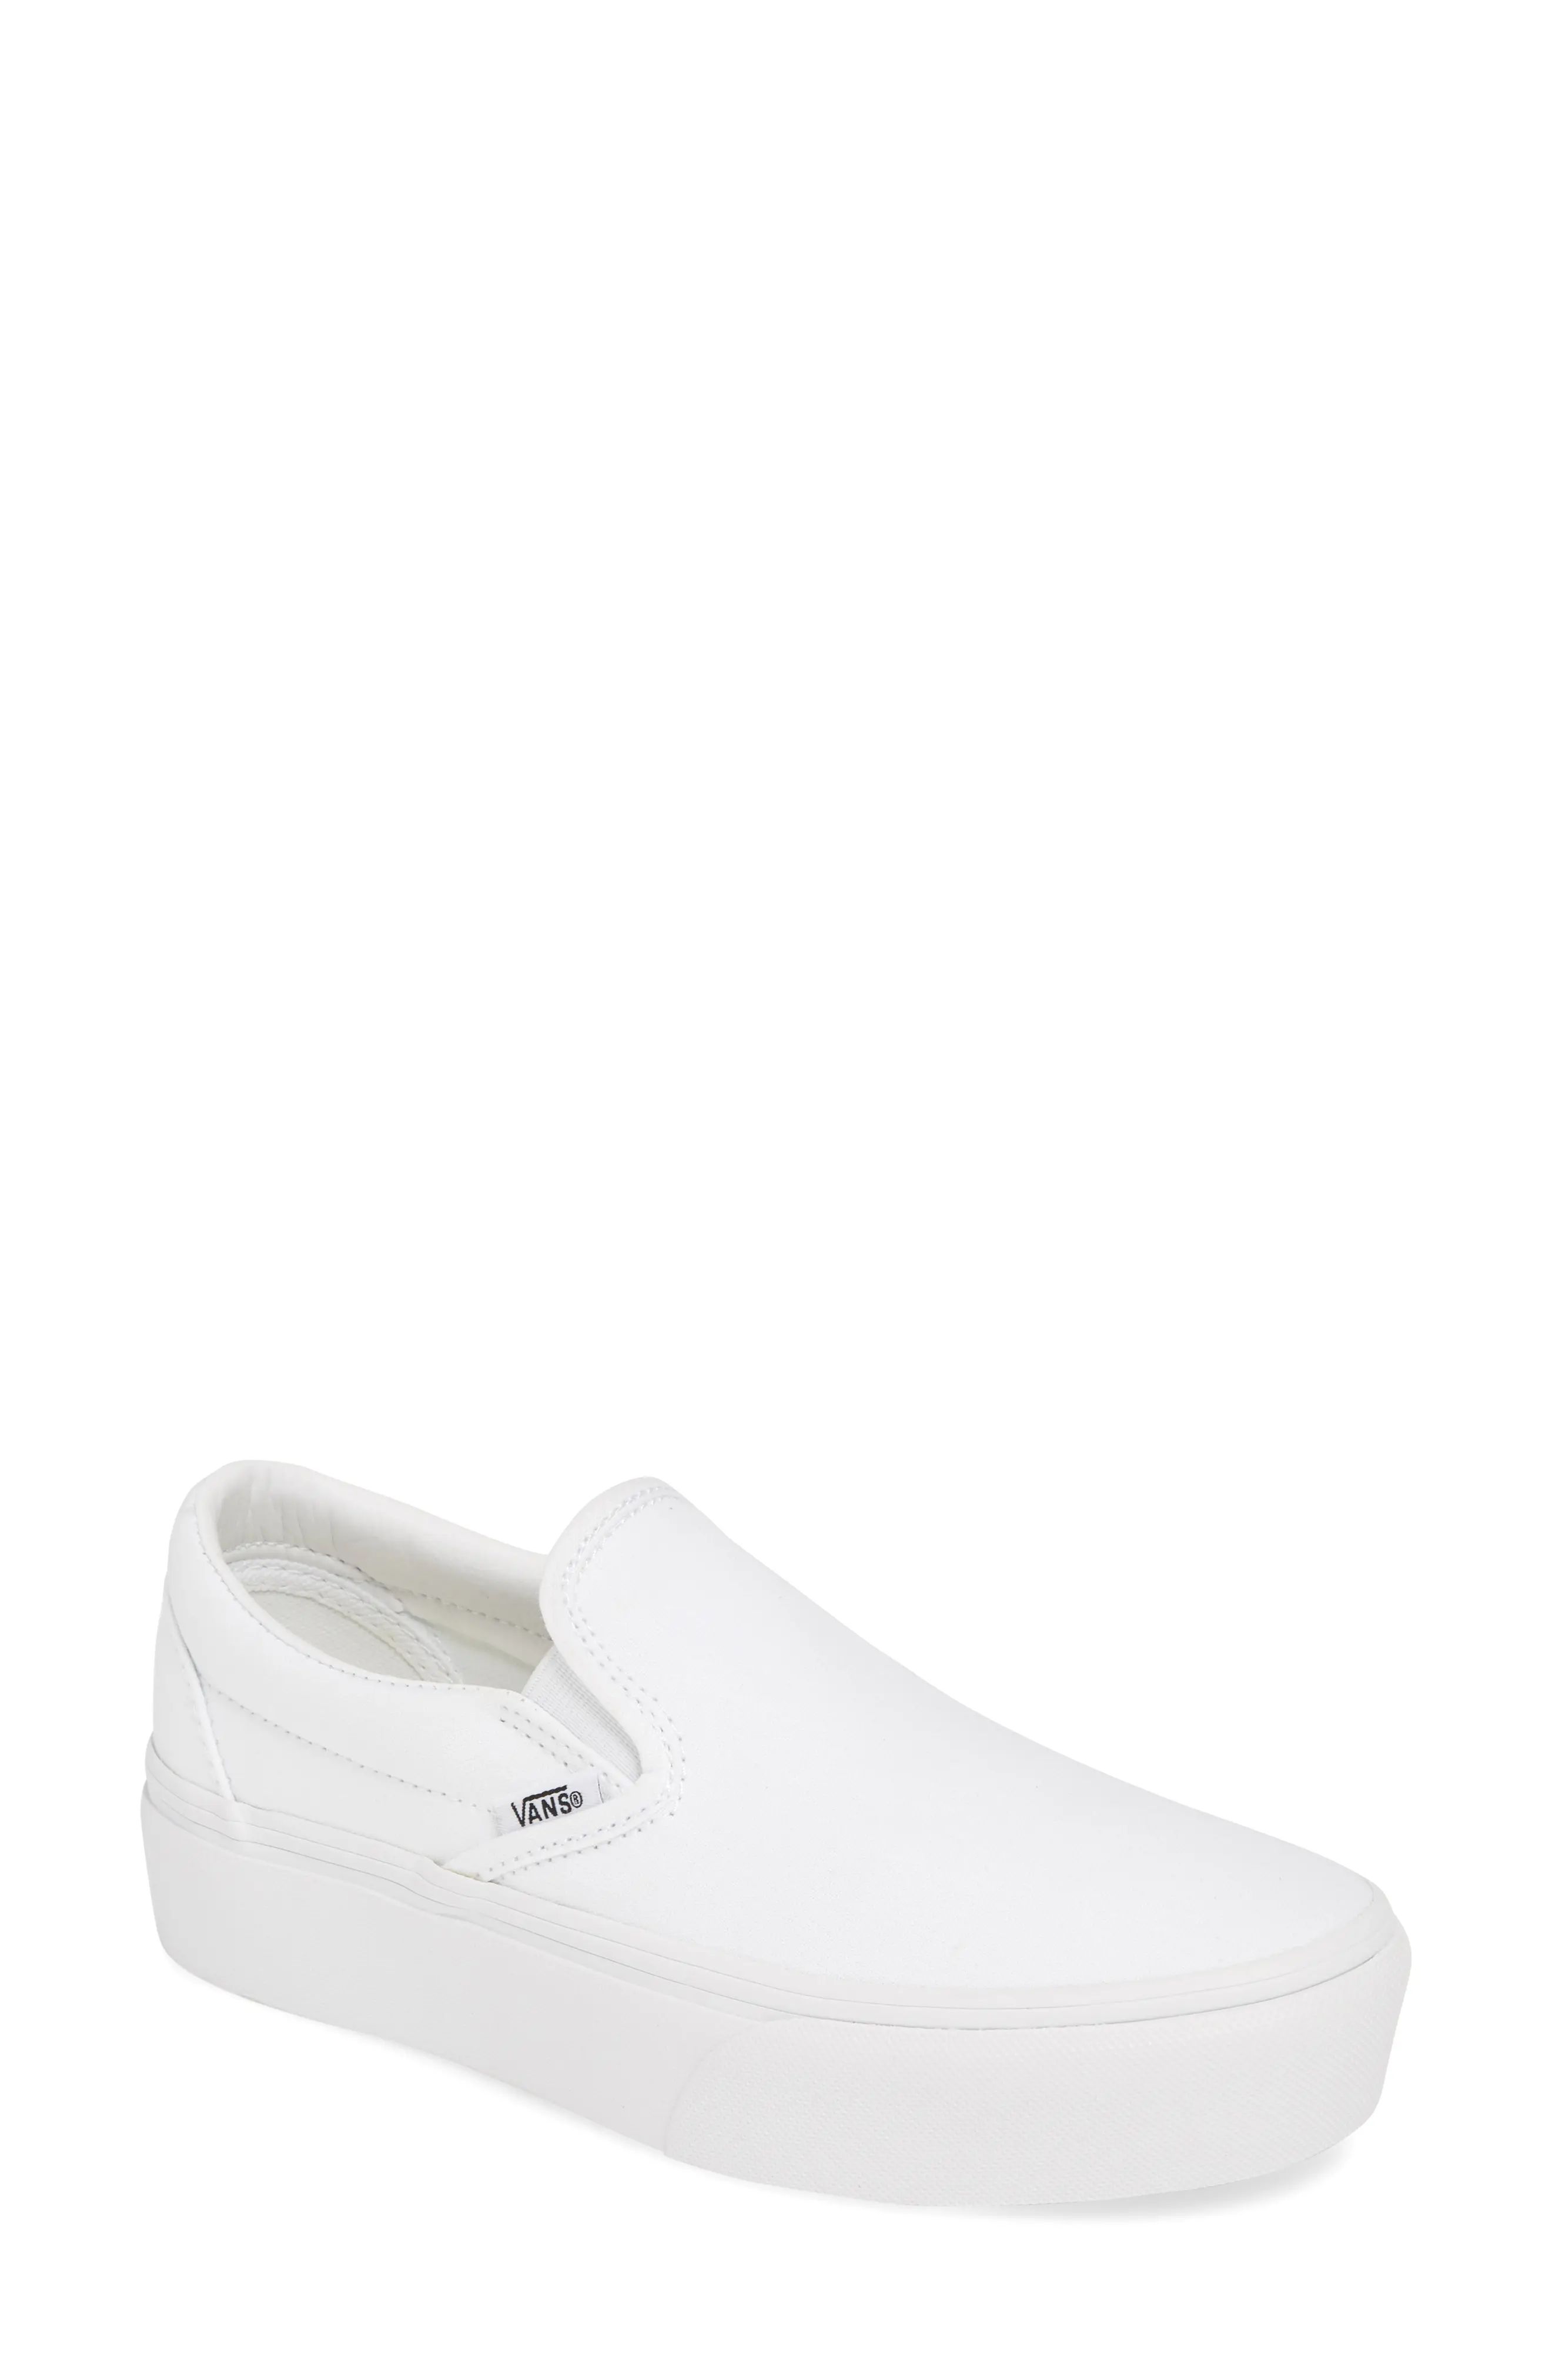 Women's Vans Platform Slip-On Sneaker, Size 11 M - White | Nordstrom